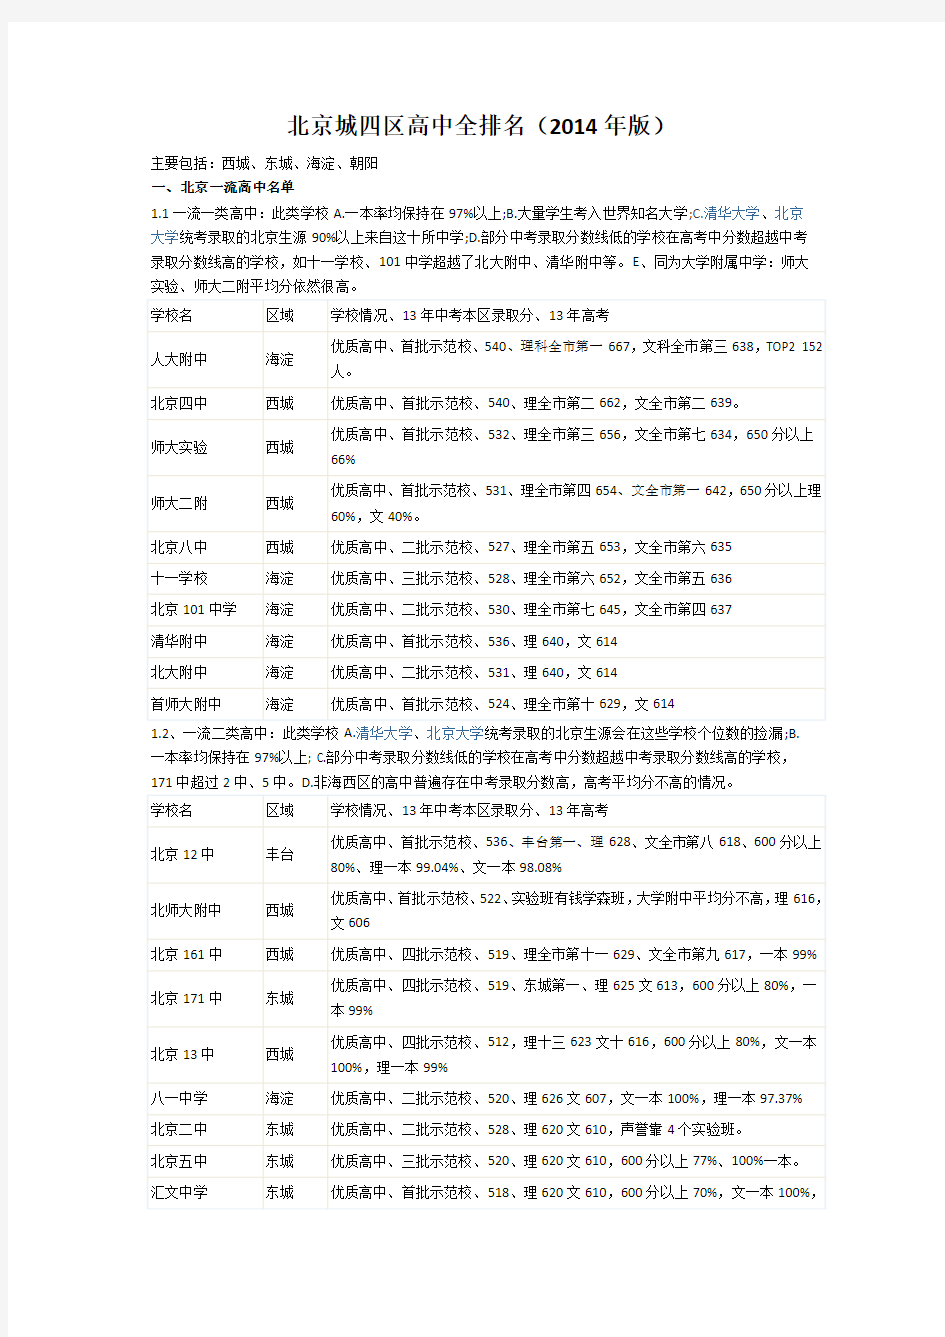 北京四个城区高中全排名及高考成绩(2014年版)